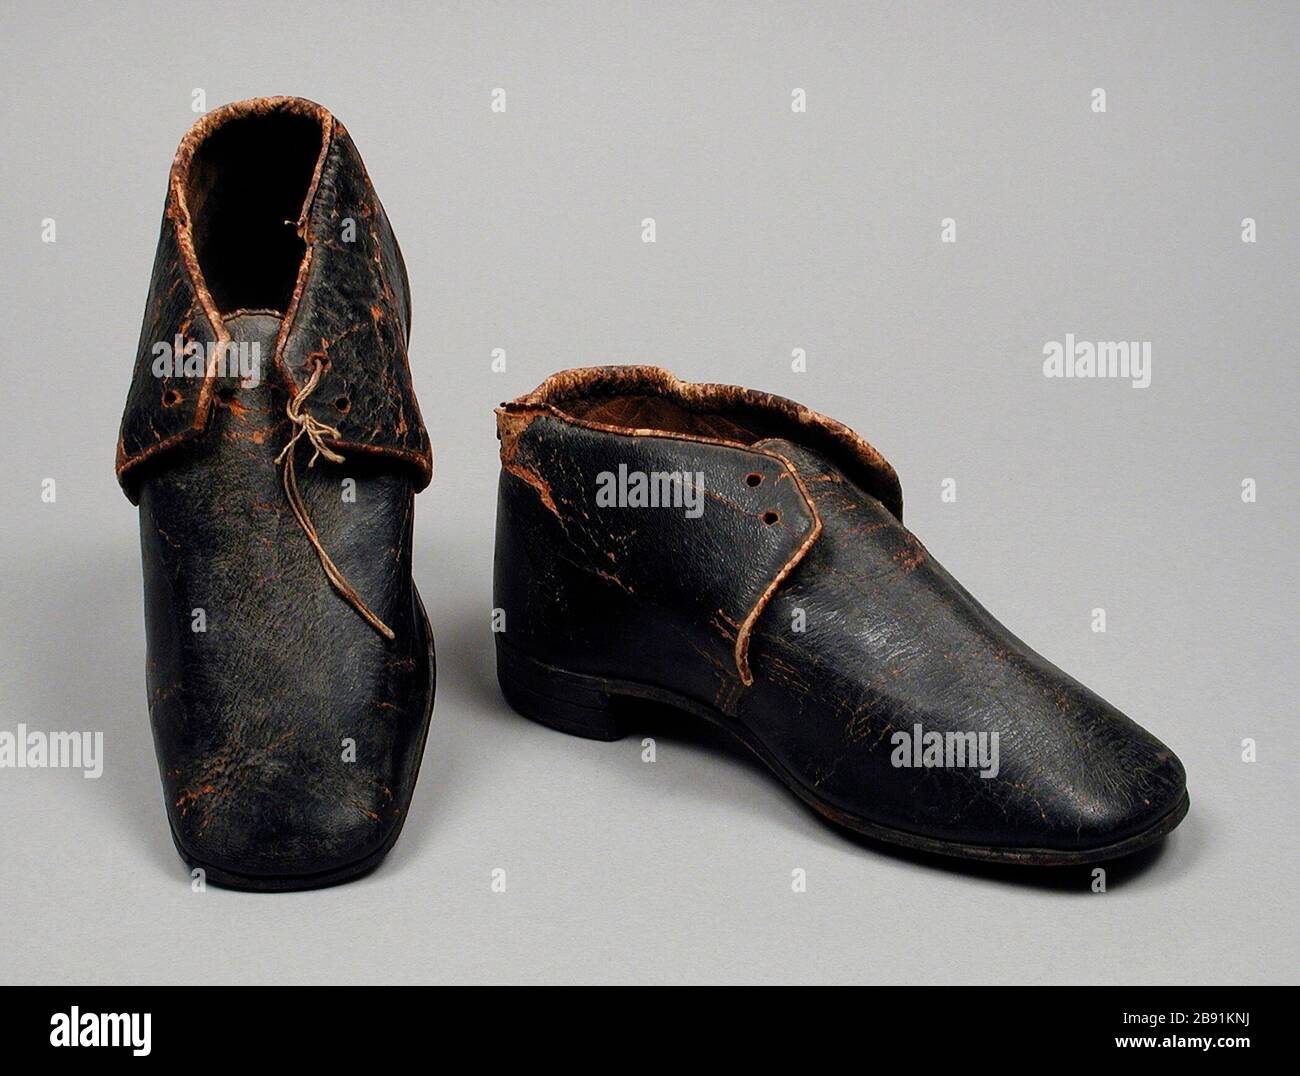 Paar Boy's knöchelhohe Schuhe; Englisch: United States, um 1860 Kostüme,  Zubehör Leder, Baumwolle Länge: 6 7/8 in. (17.46 cm) jedes; Größe: 9 Frau  Alice F. Schott Vermächtnis (M. 67.8. 181a-b) Kostüm und